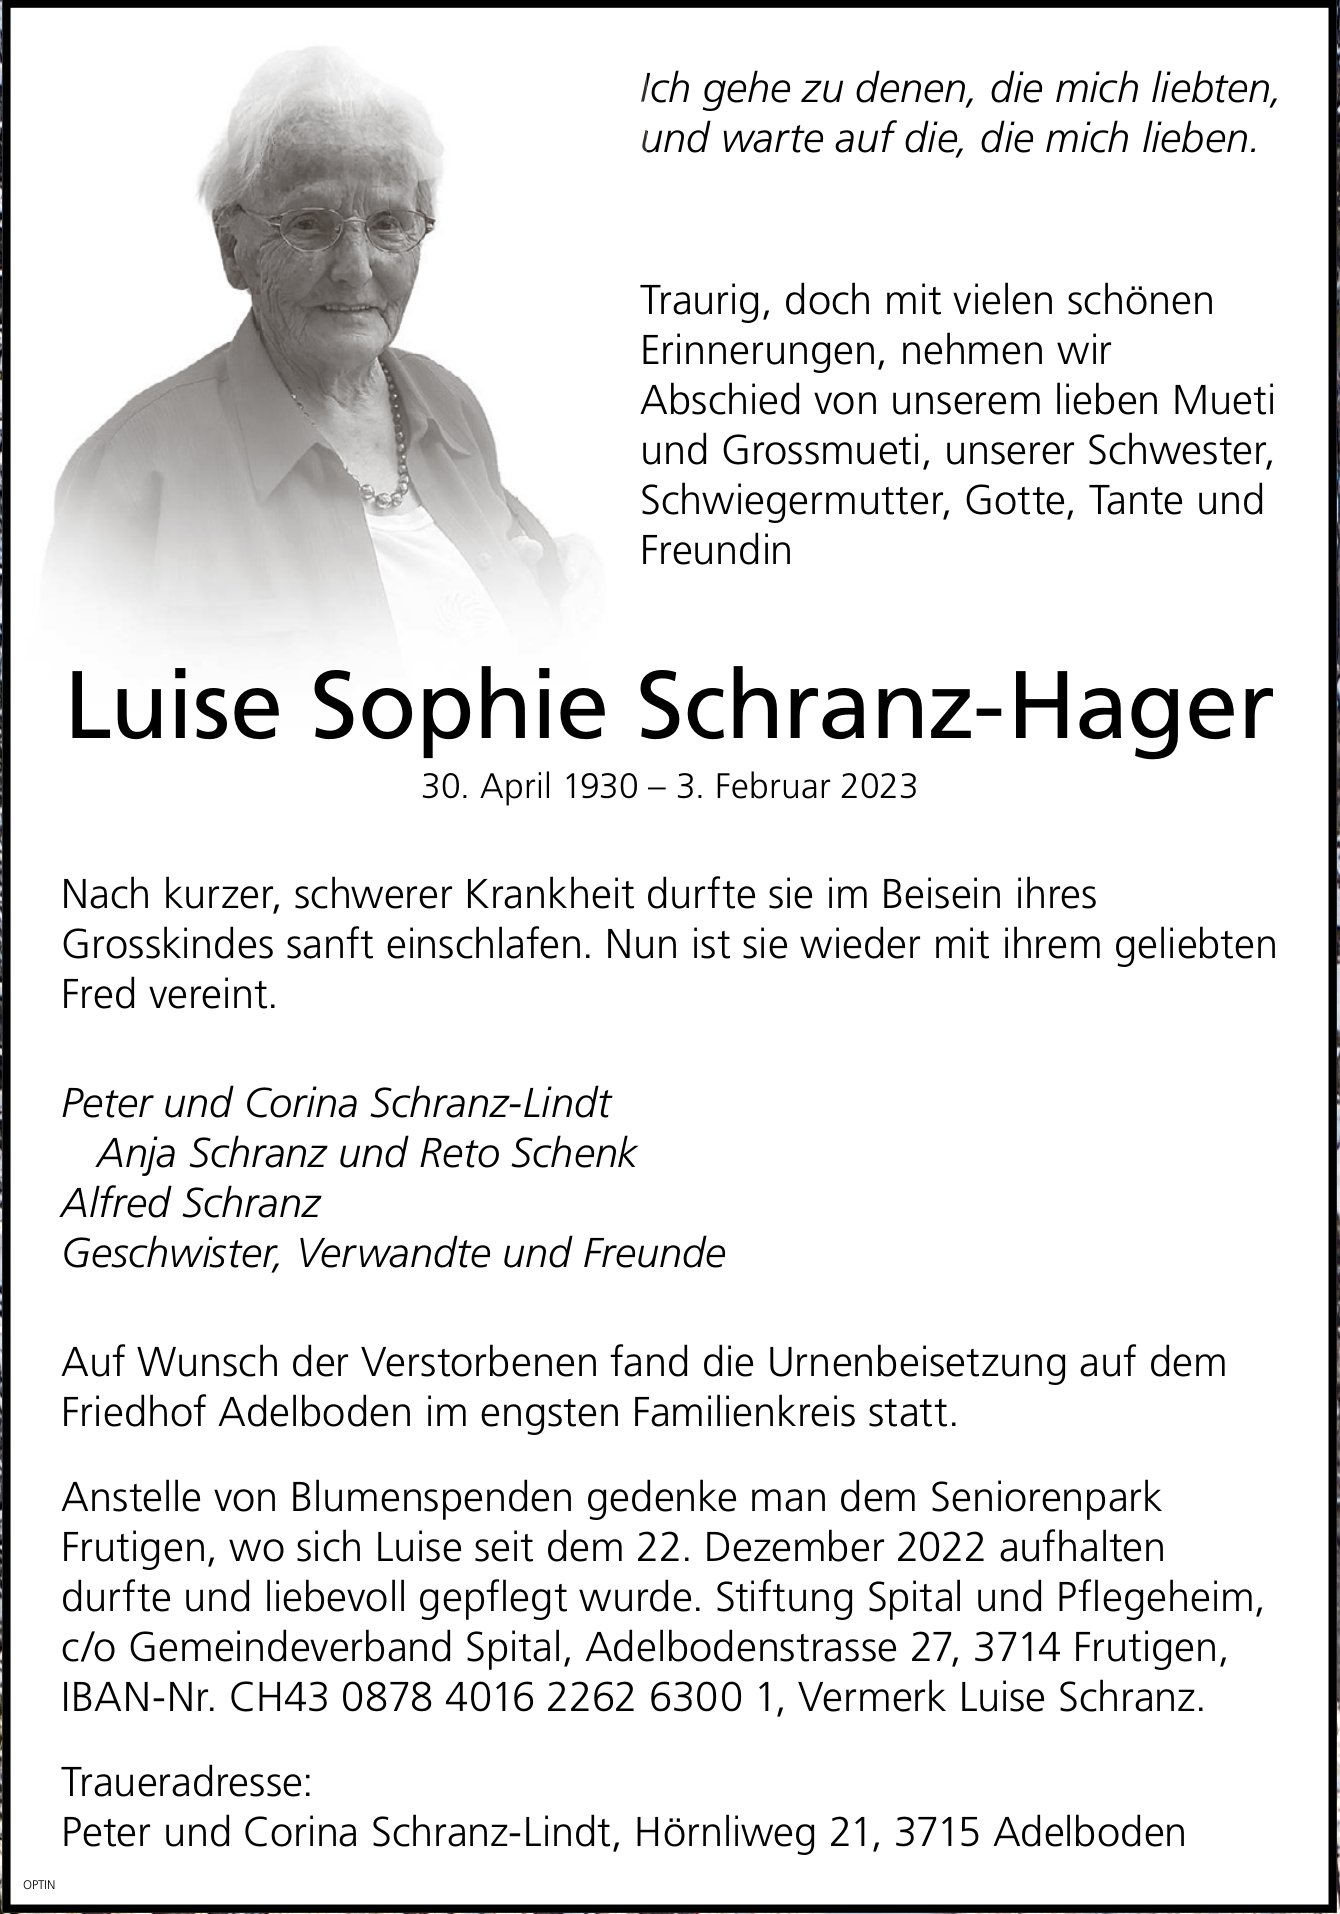 Luise Sophie Schranz-Hager, Dezember 2022 / TA